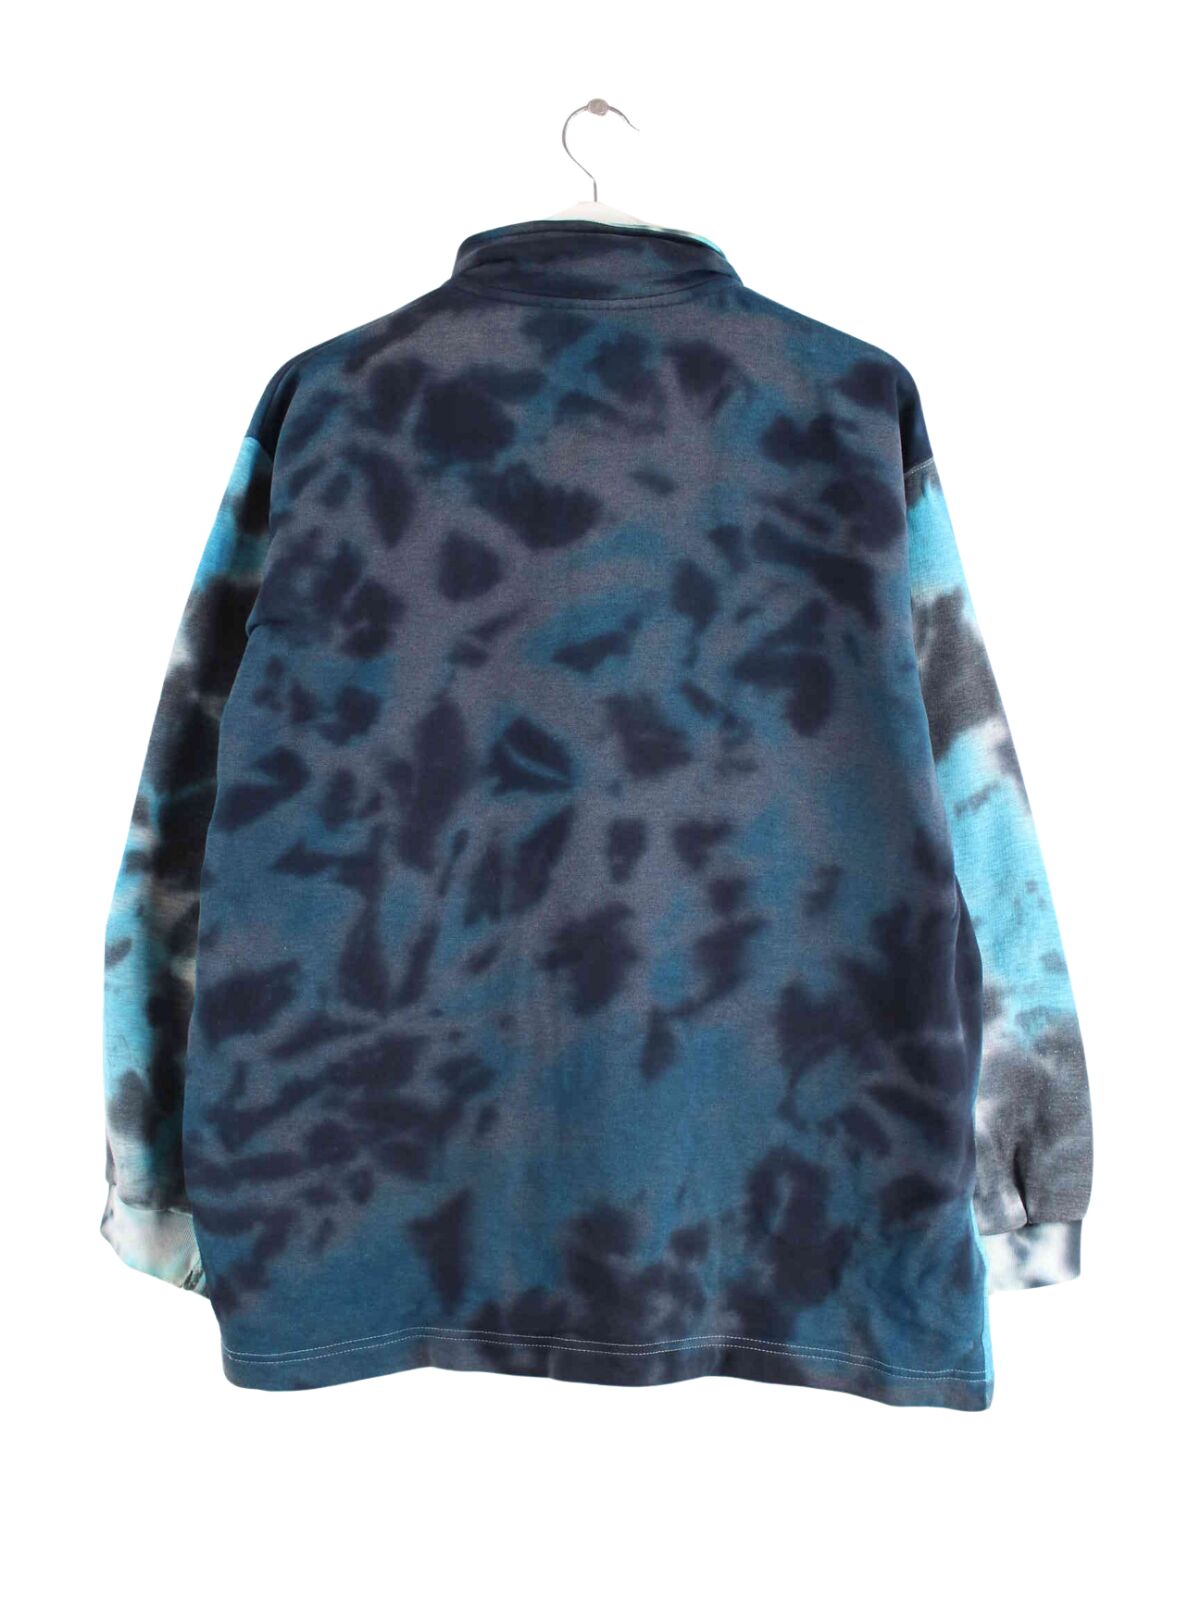 Reebok 90s Vintage Tie Dye Half Zip Sweater Blau M (back image)